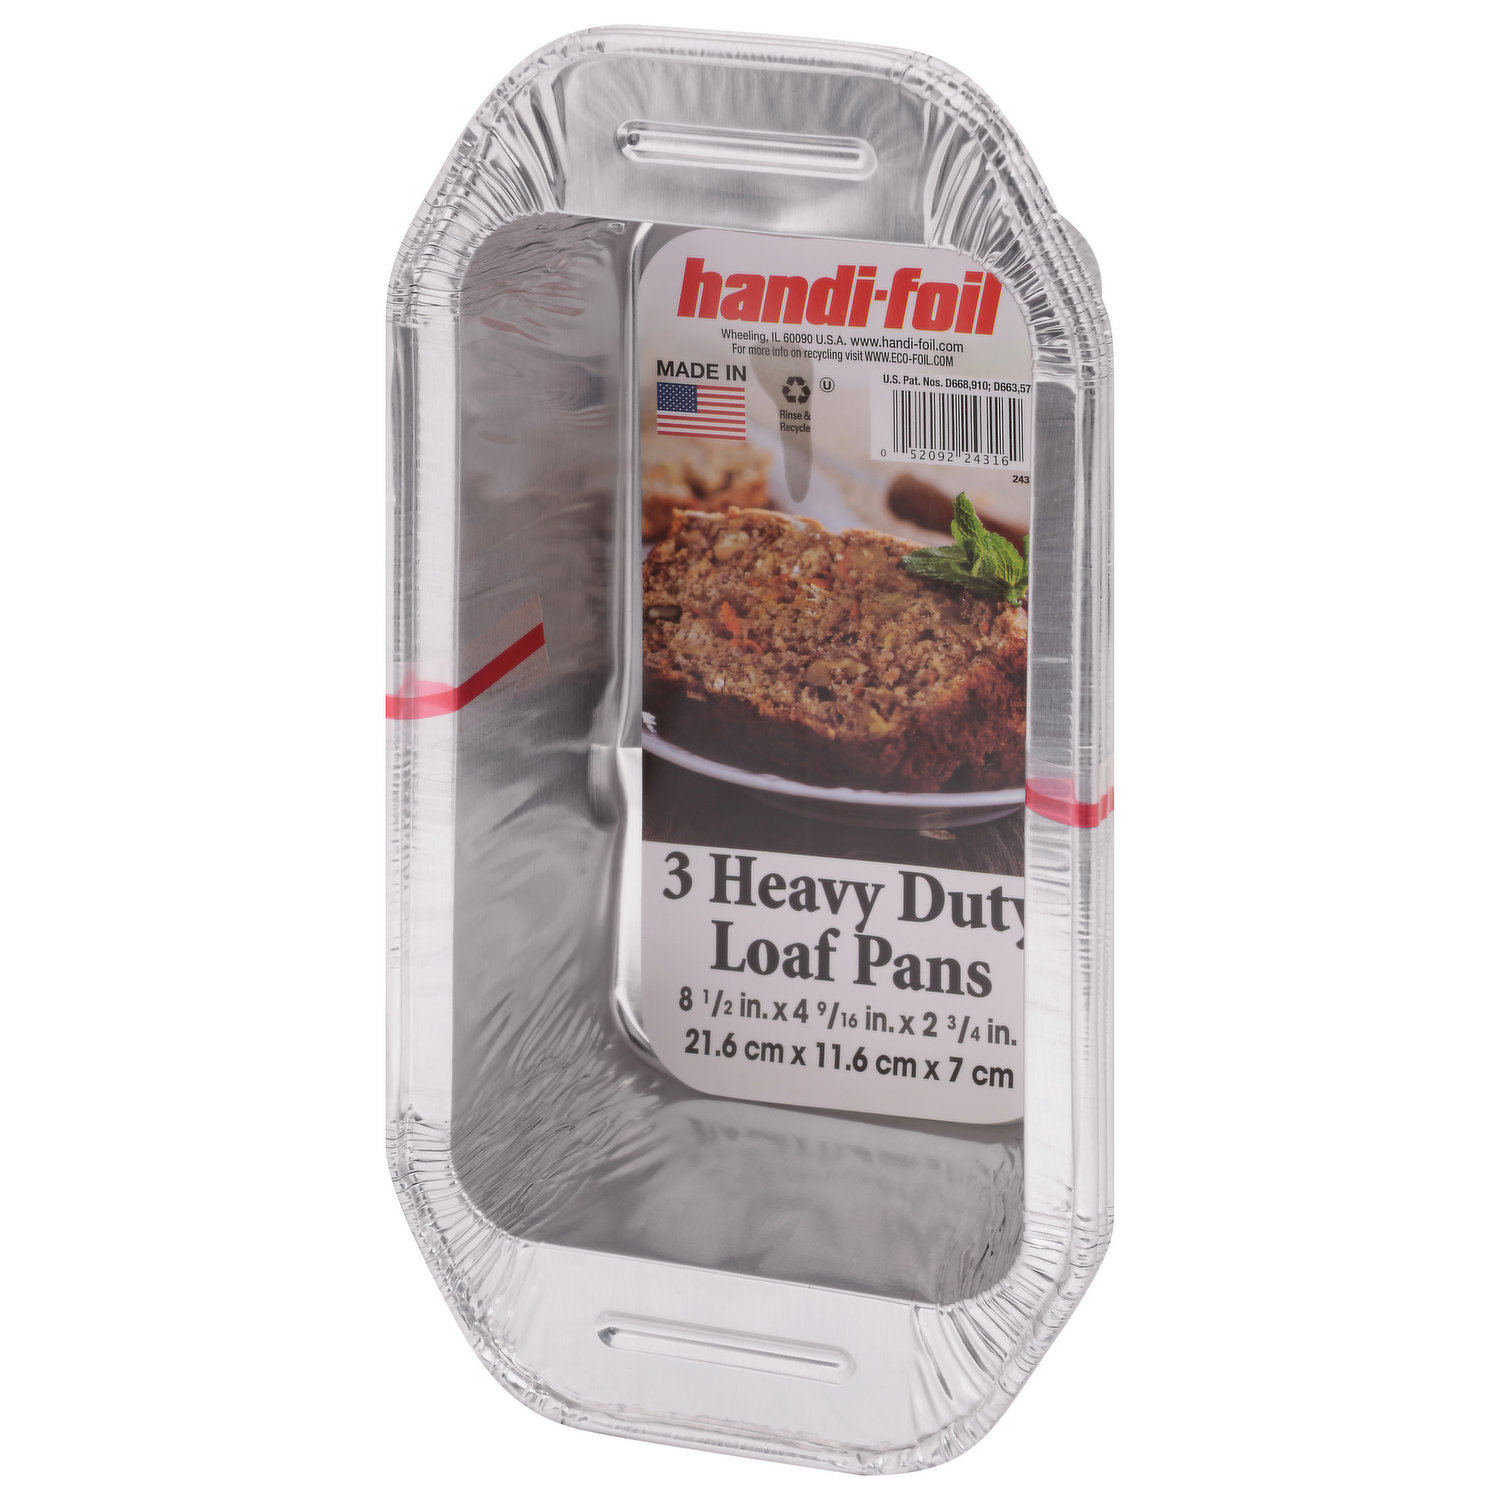 Handi-Foil Lasagna Pans, Giant, 5 Pack - 5 pans